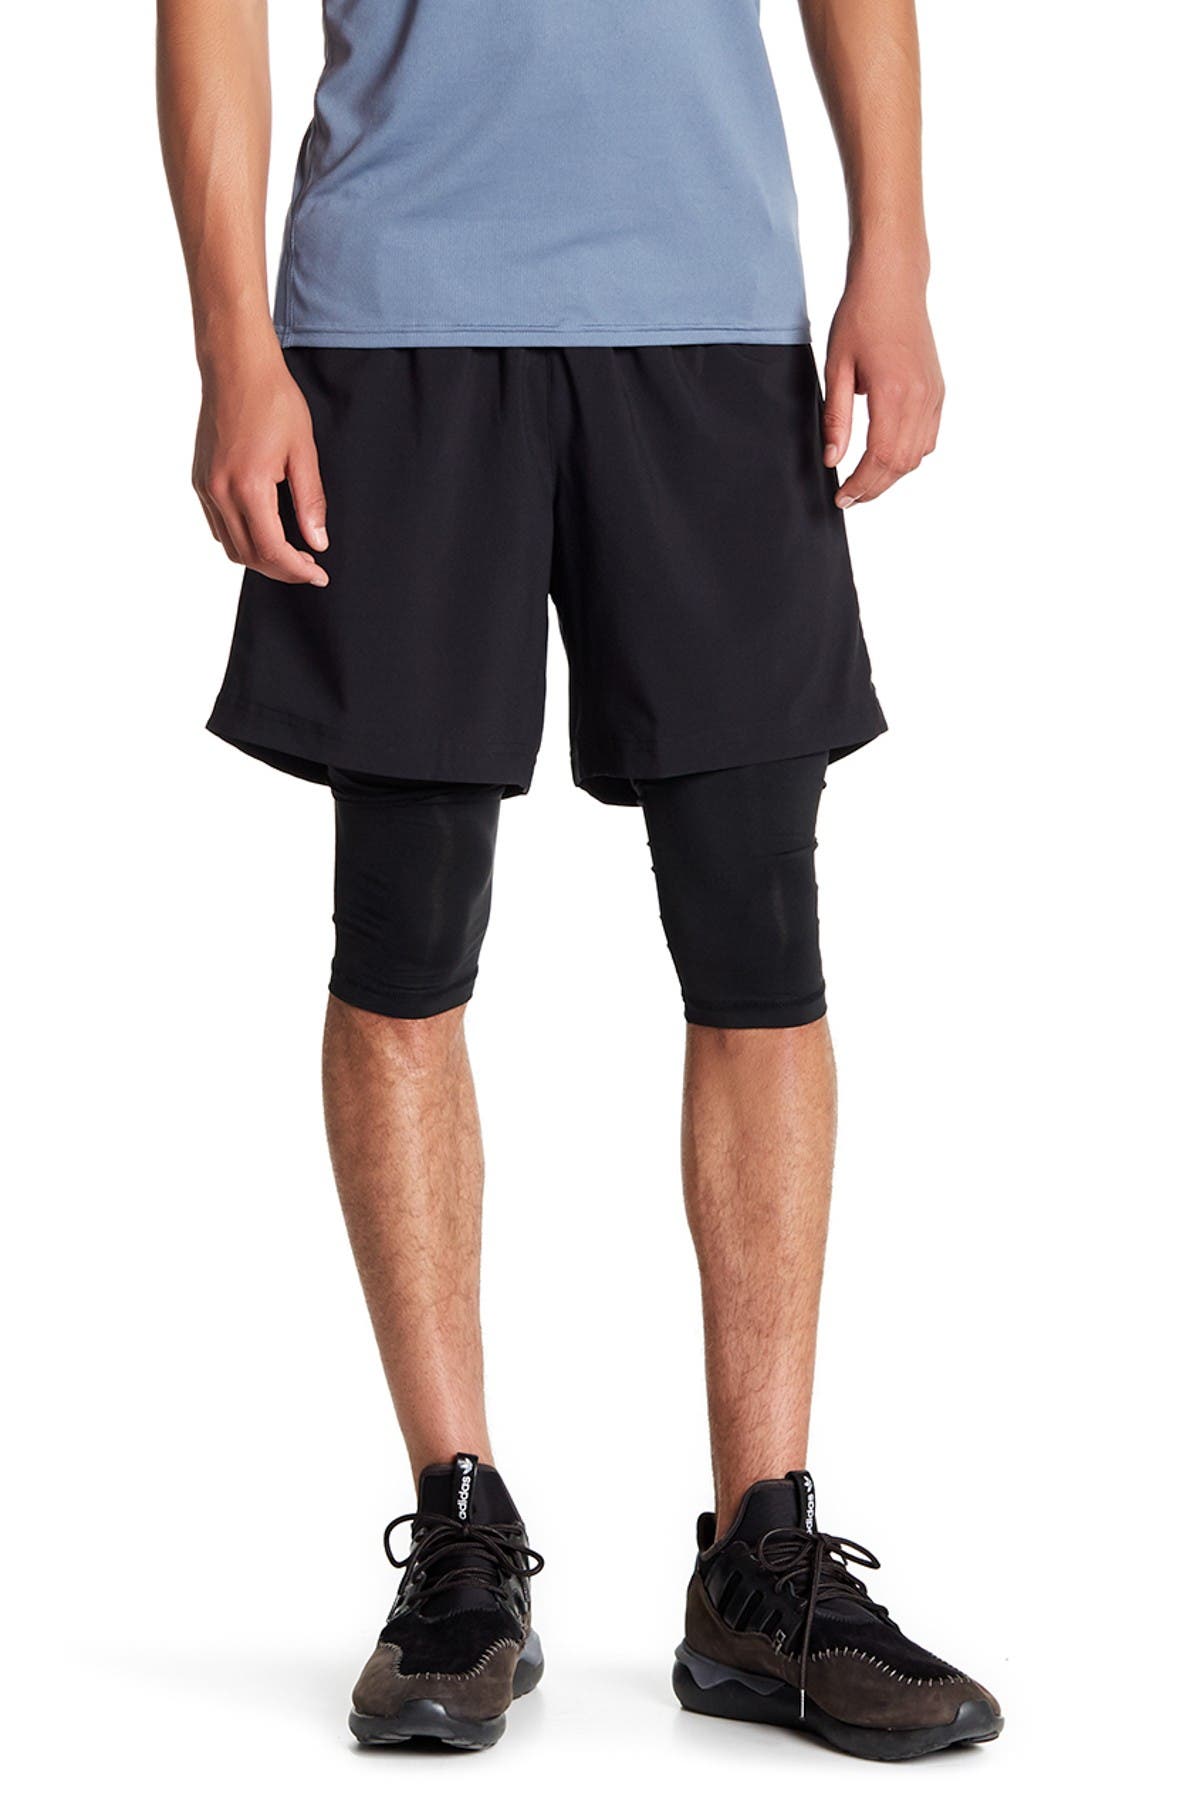 adidas reflective shorts